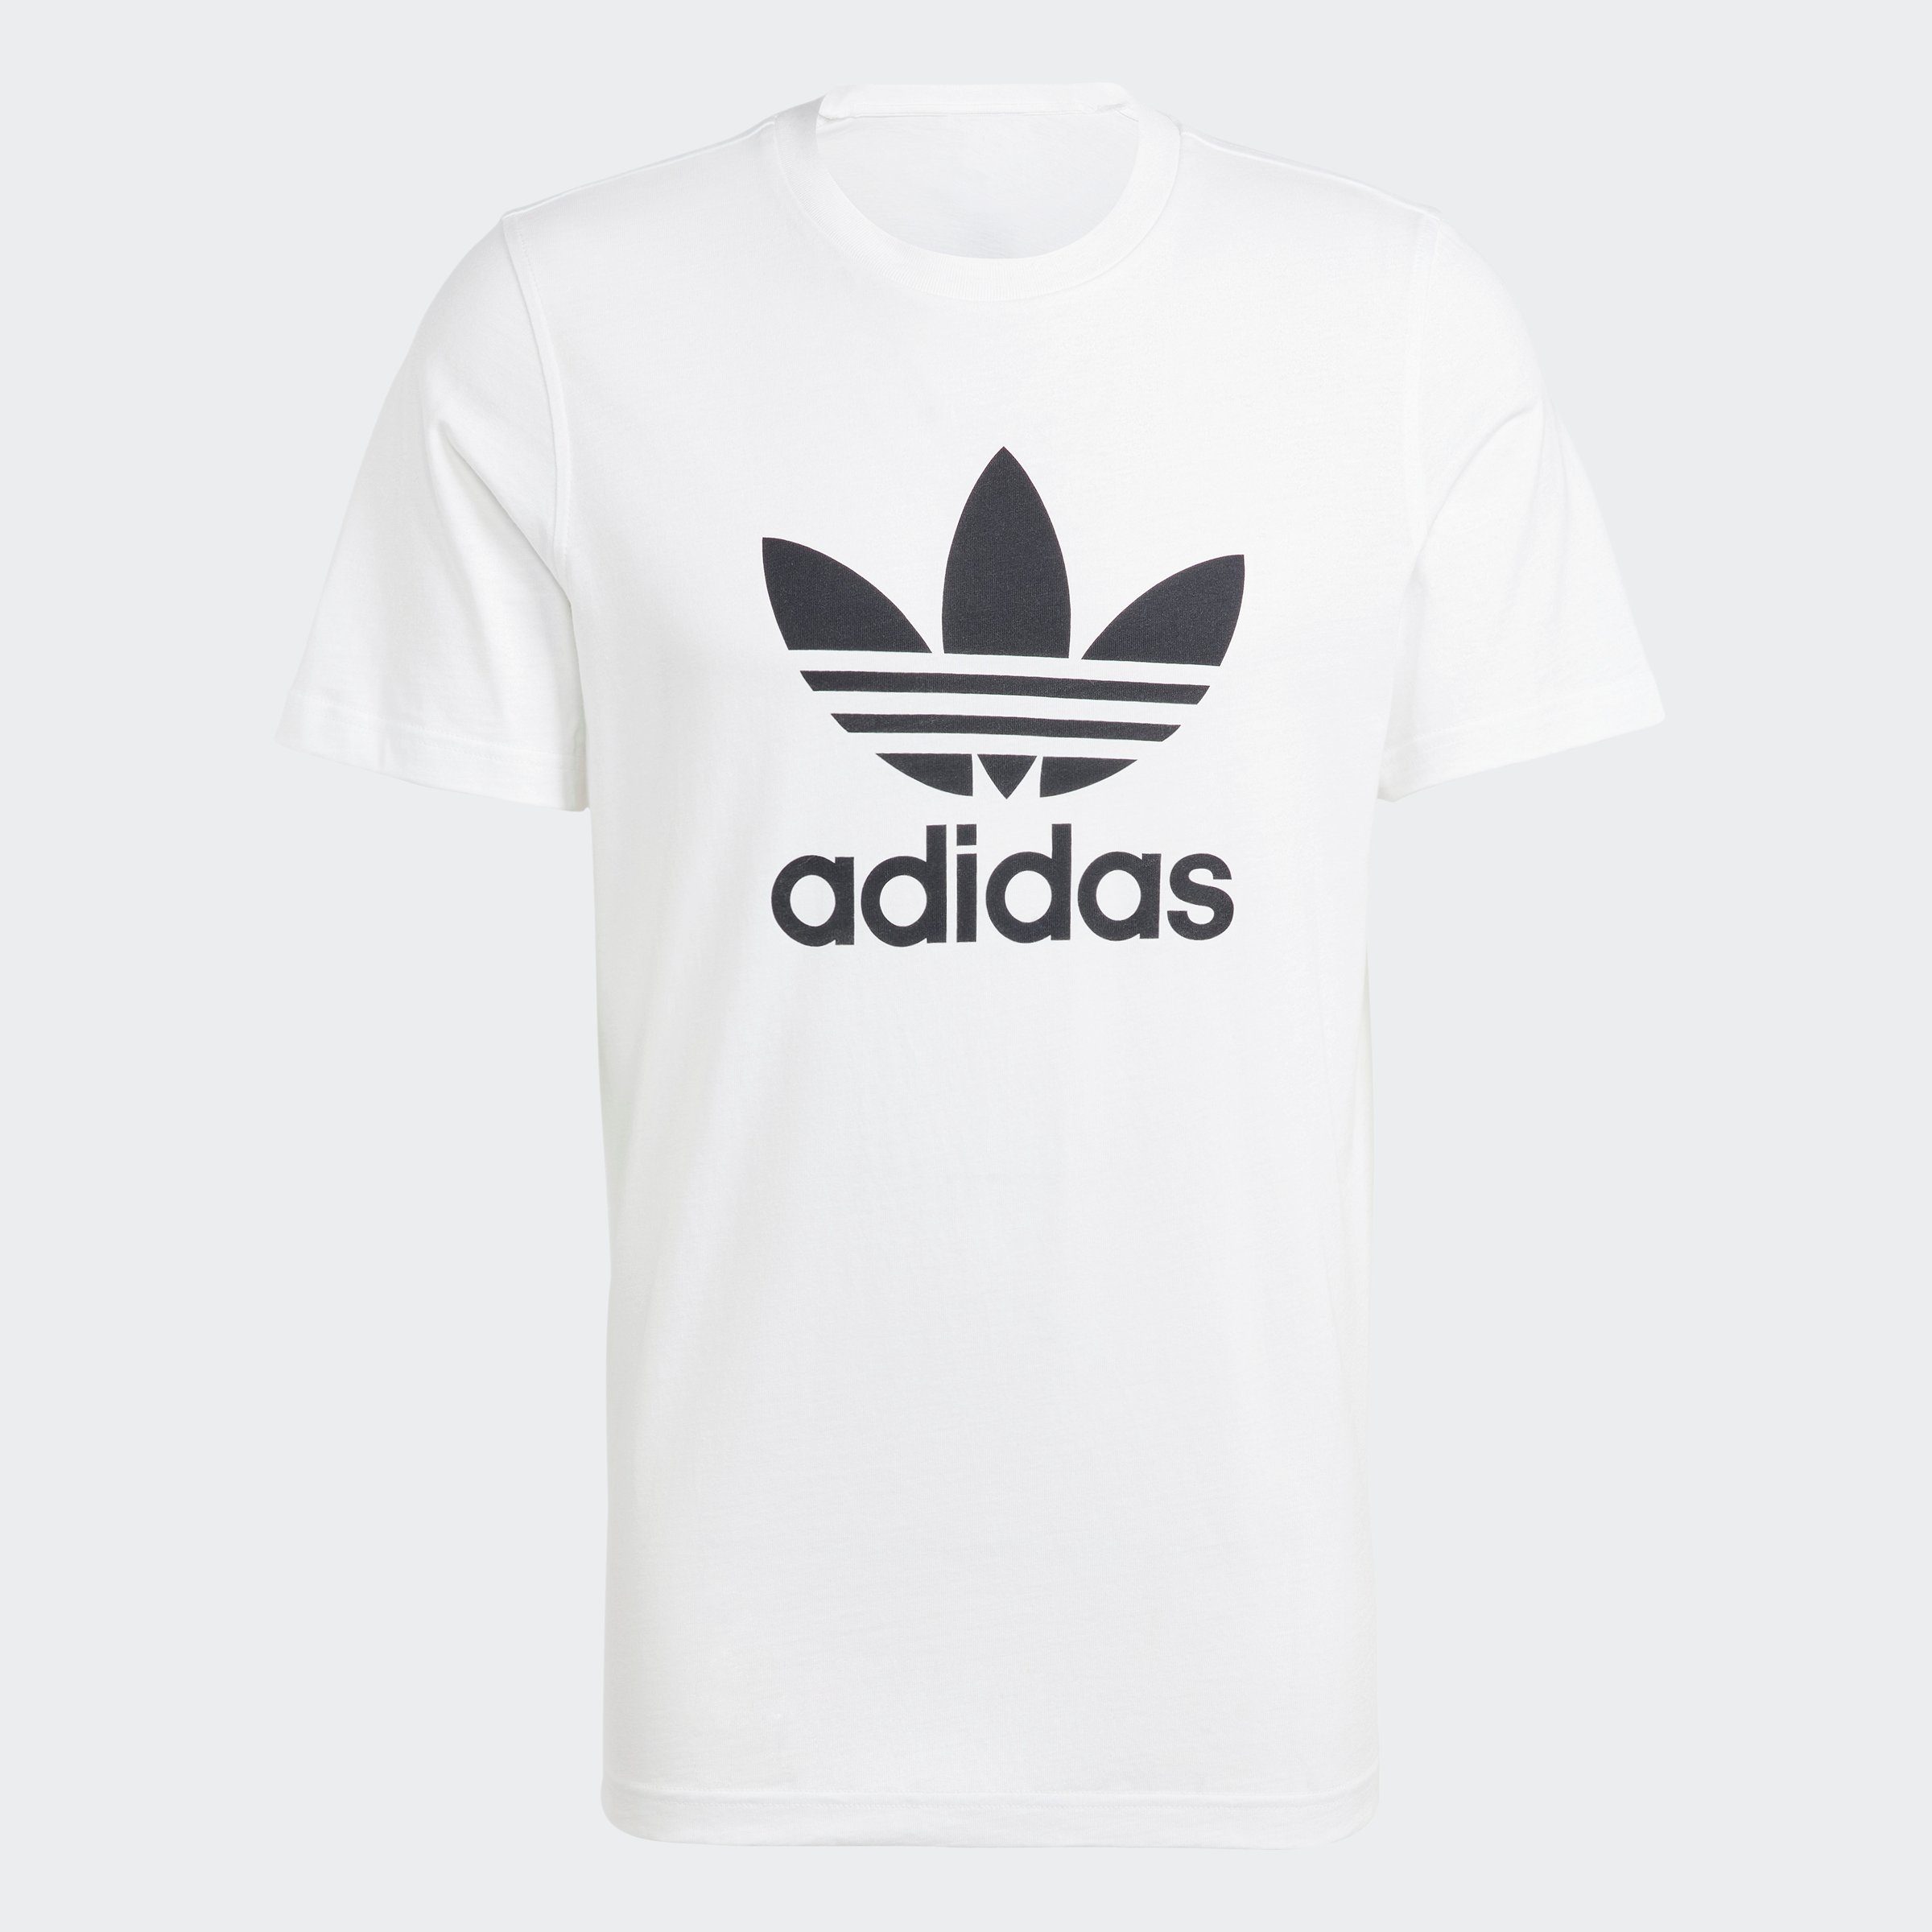 CLASSICS T-Shirt Black ADICOLOR White adidas TREFOIL / Originals